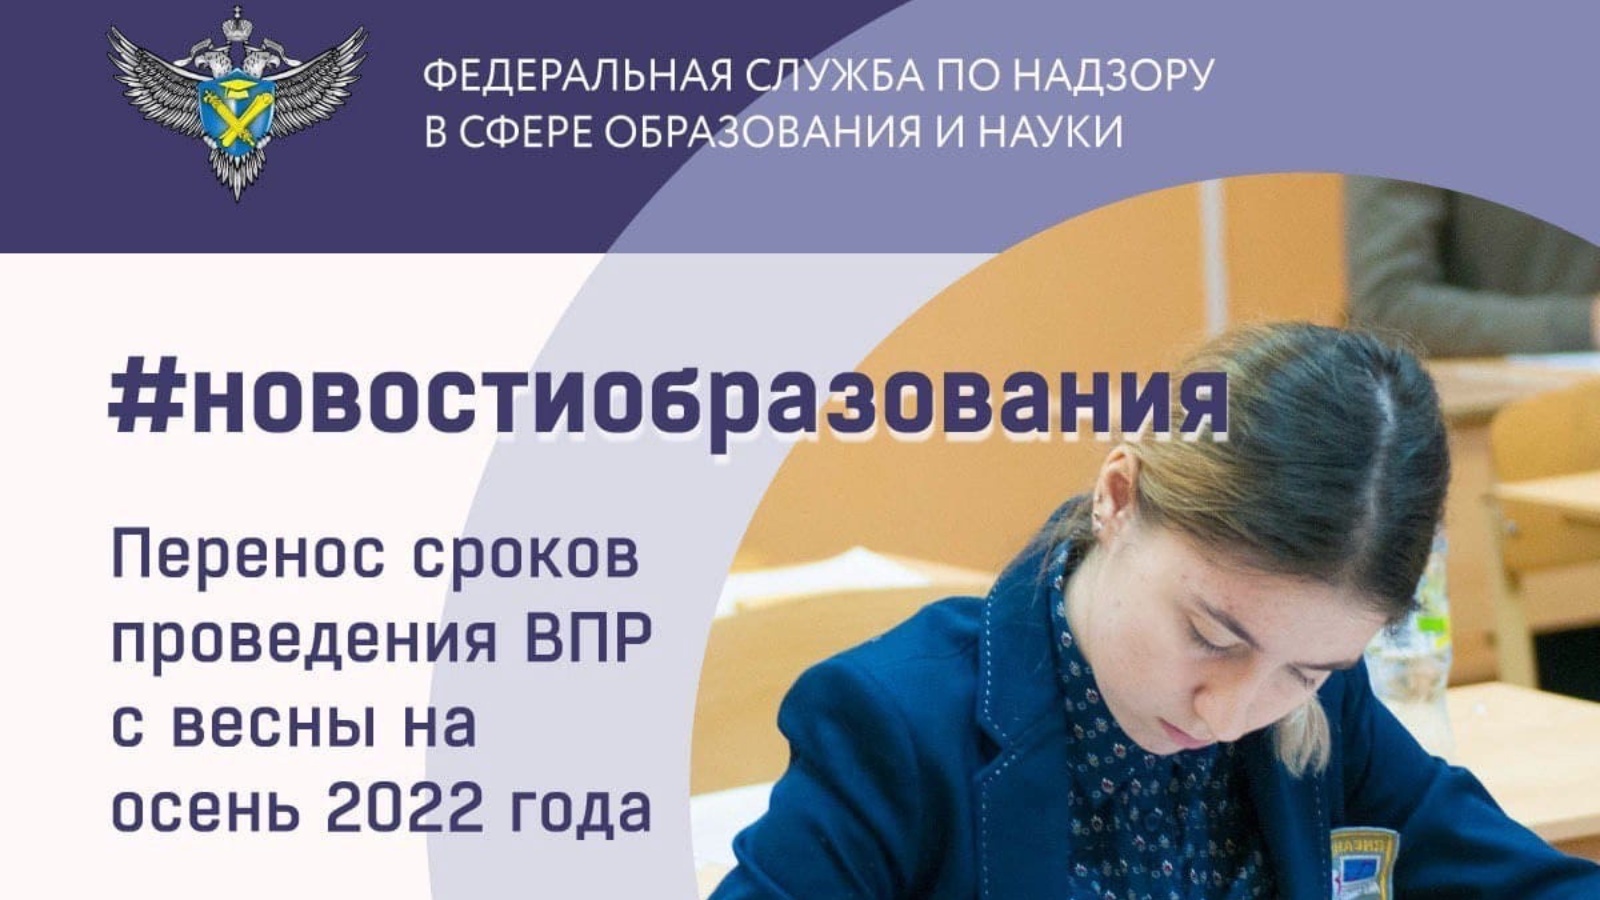 Https student edu ru впр. Проведение ВПР В школах перенесено на осень 2022 года. ВПР 2022. ВПР 2022 осень. Отменили ВПР В 2022 году.